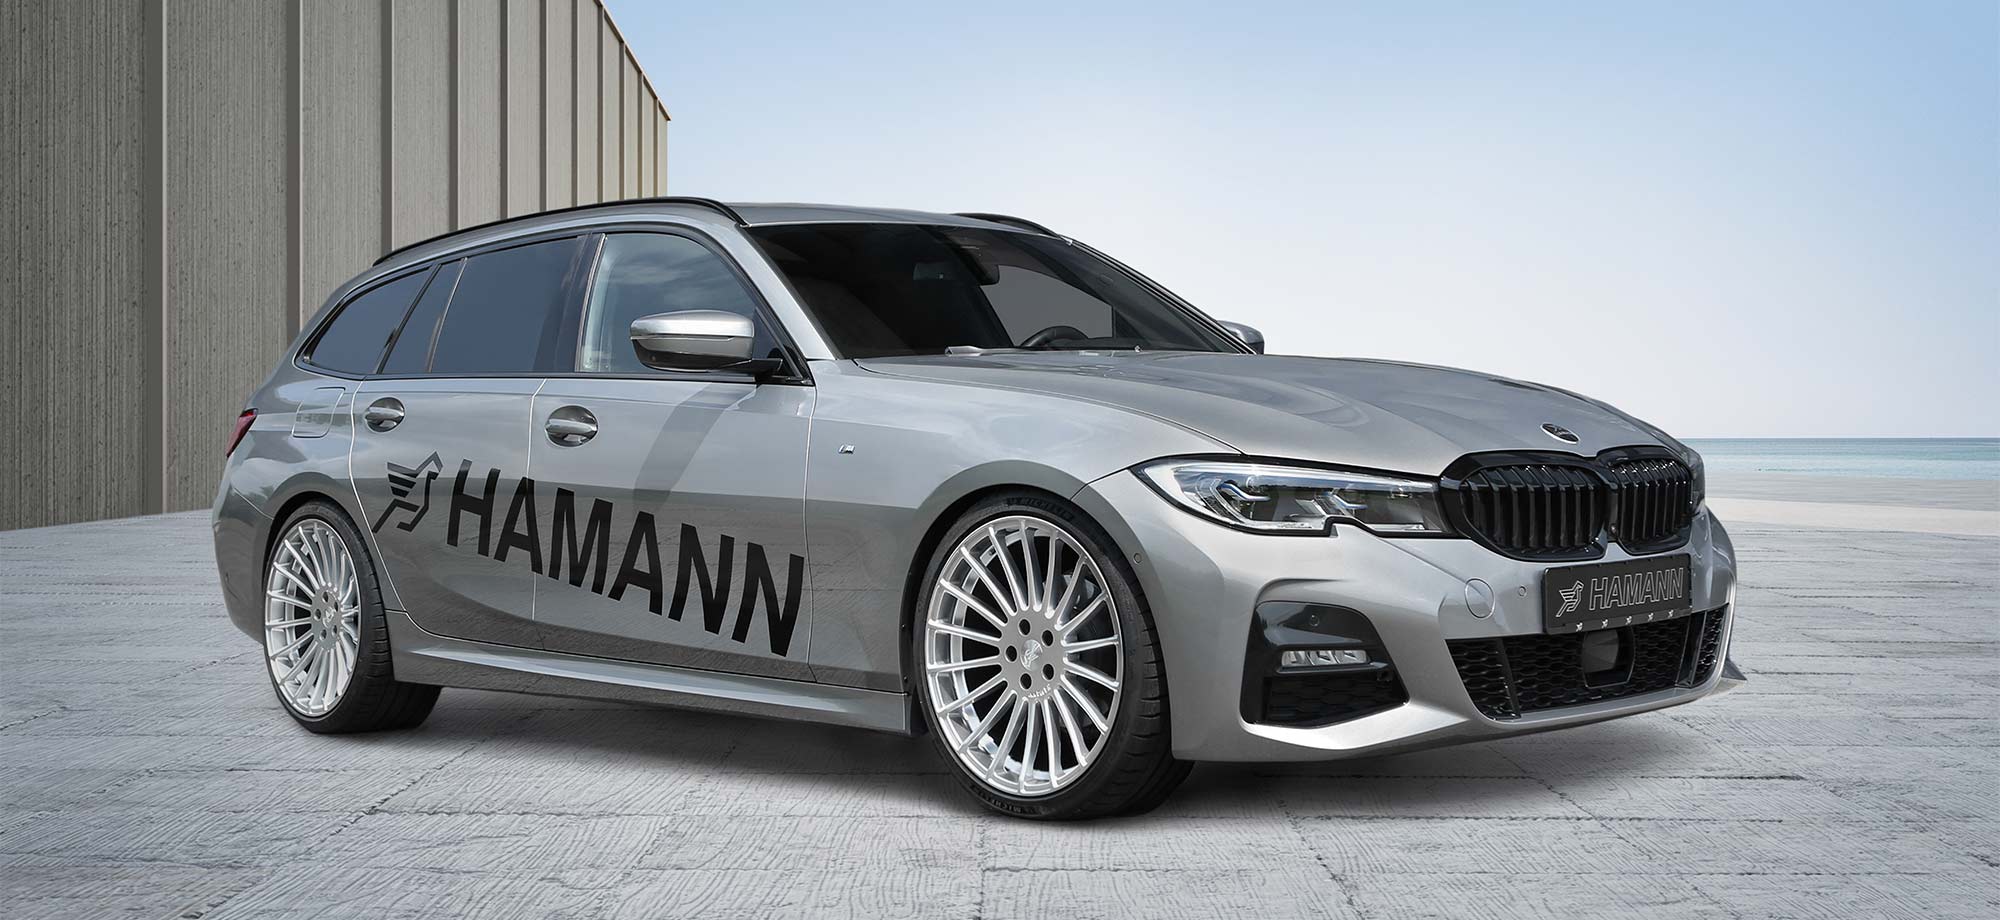 BMW 3ER G21 TOURING, Hamann Tuning